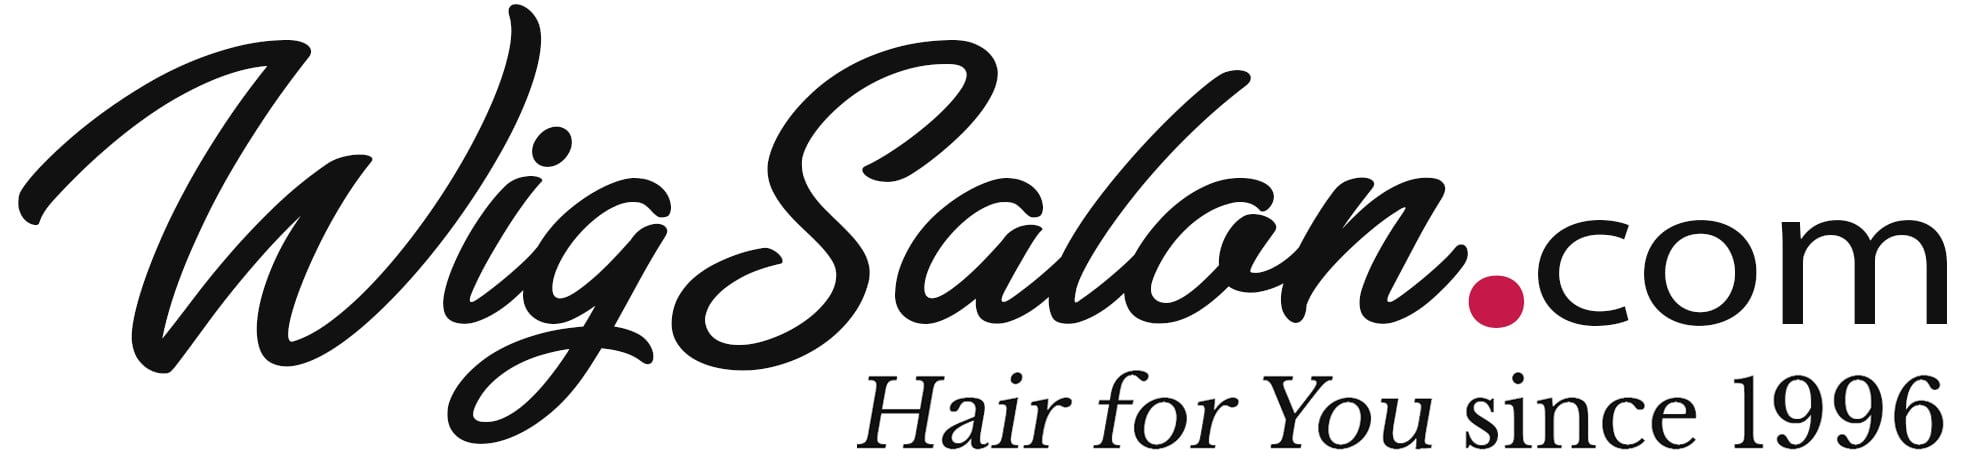 Wig Salon